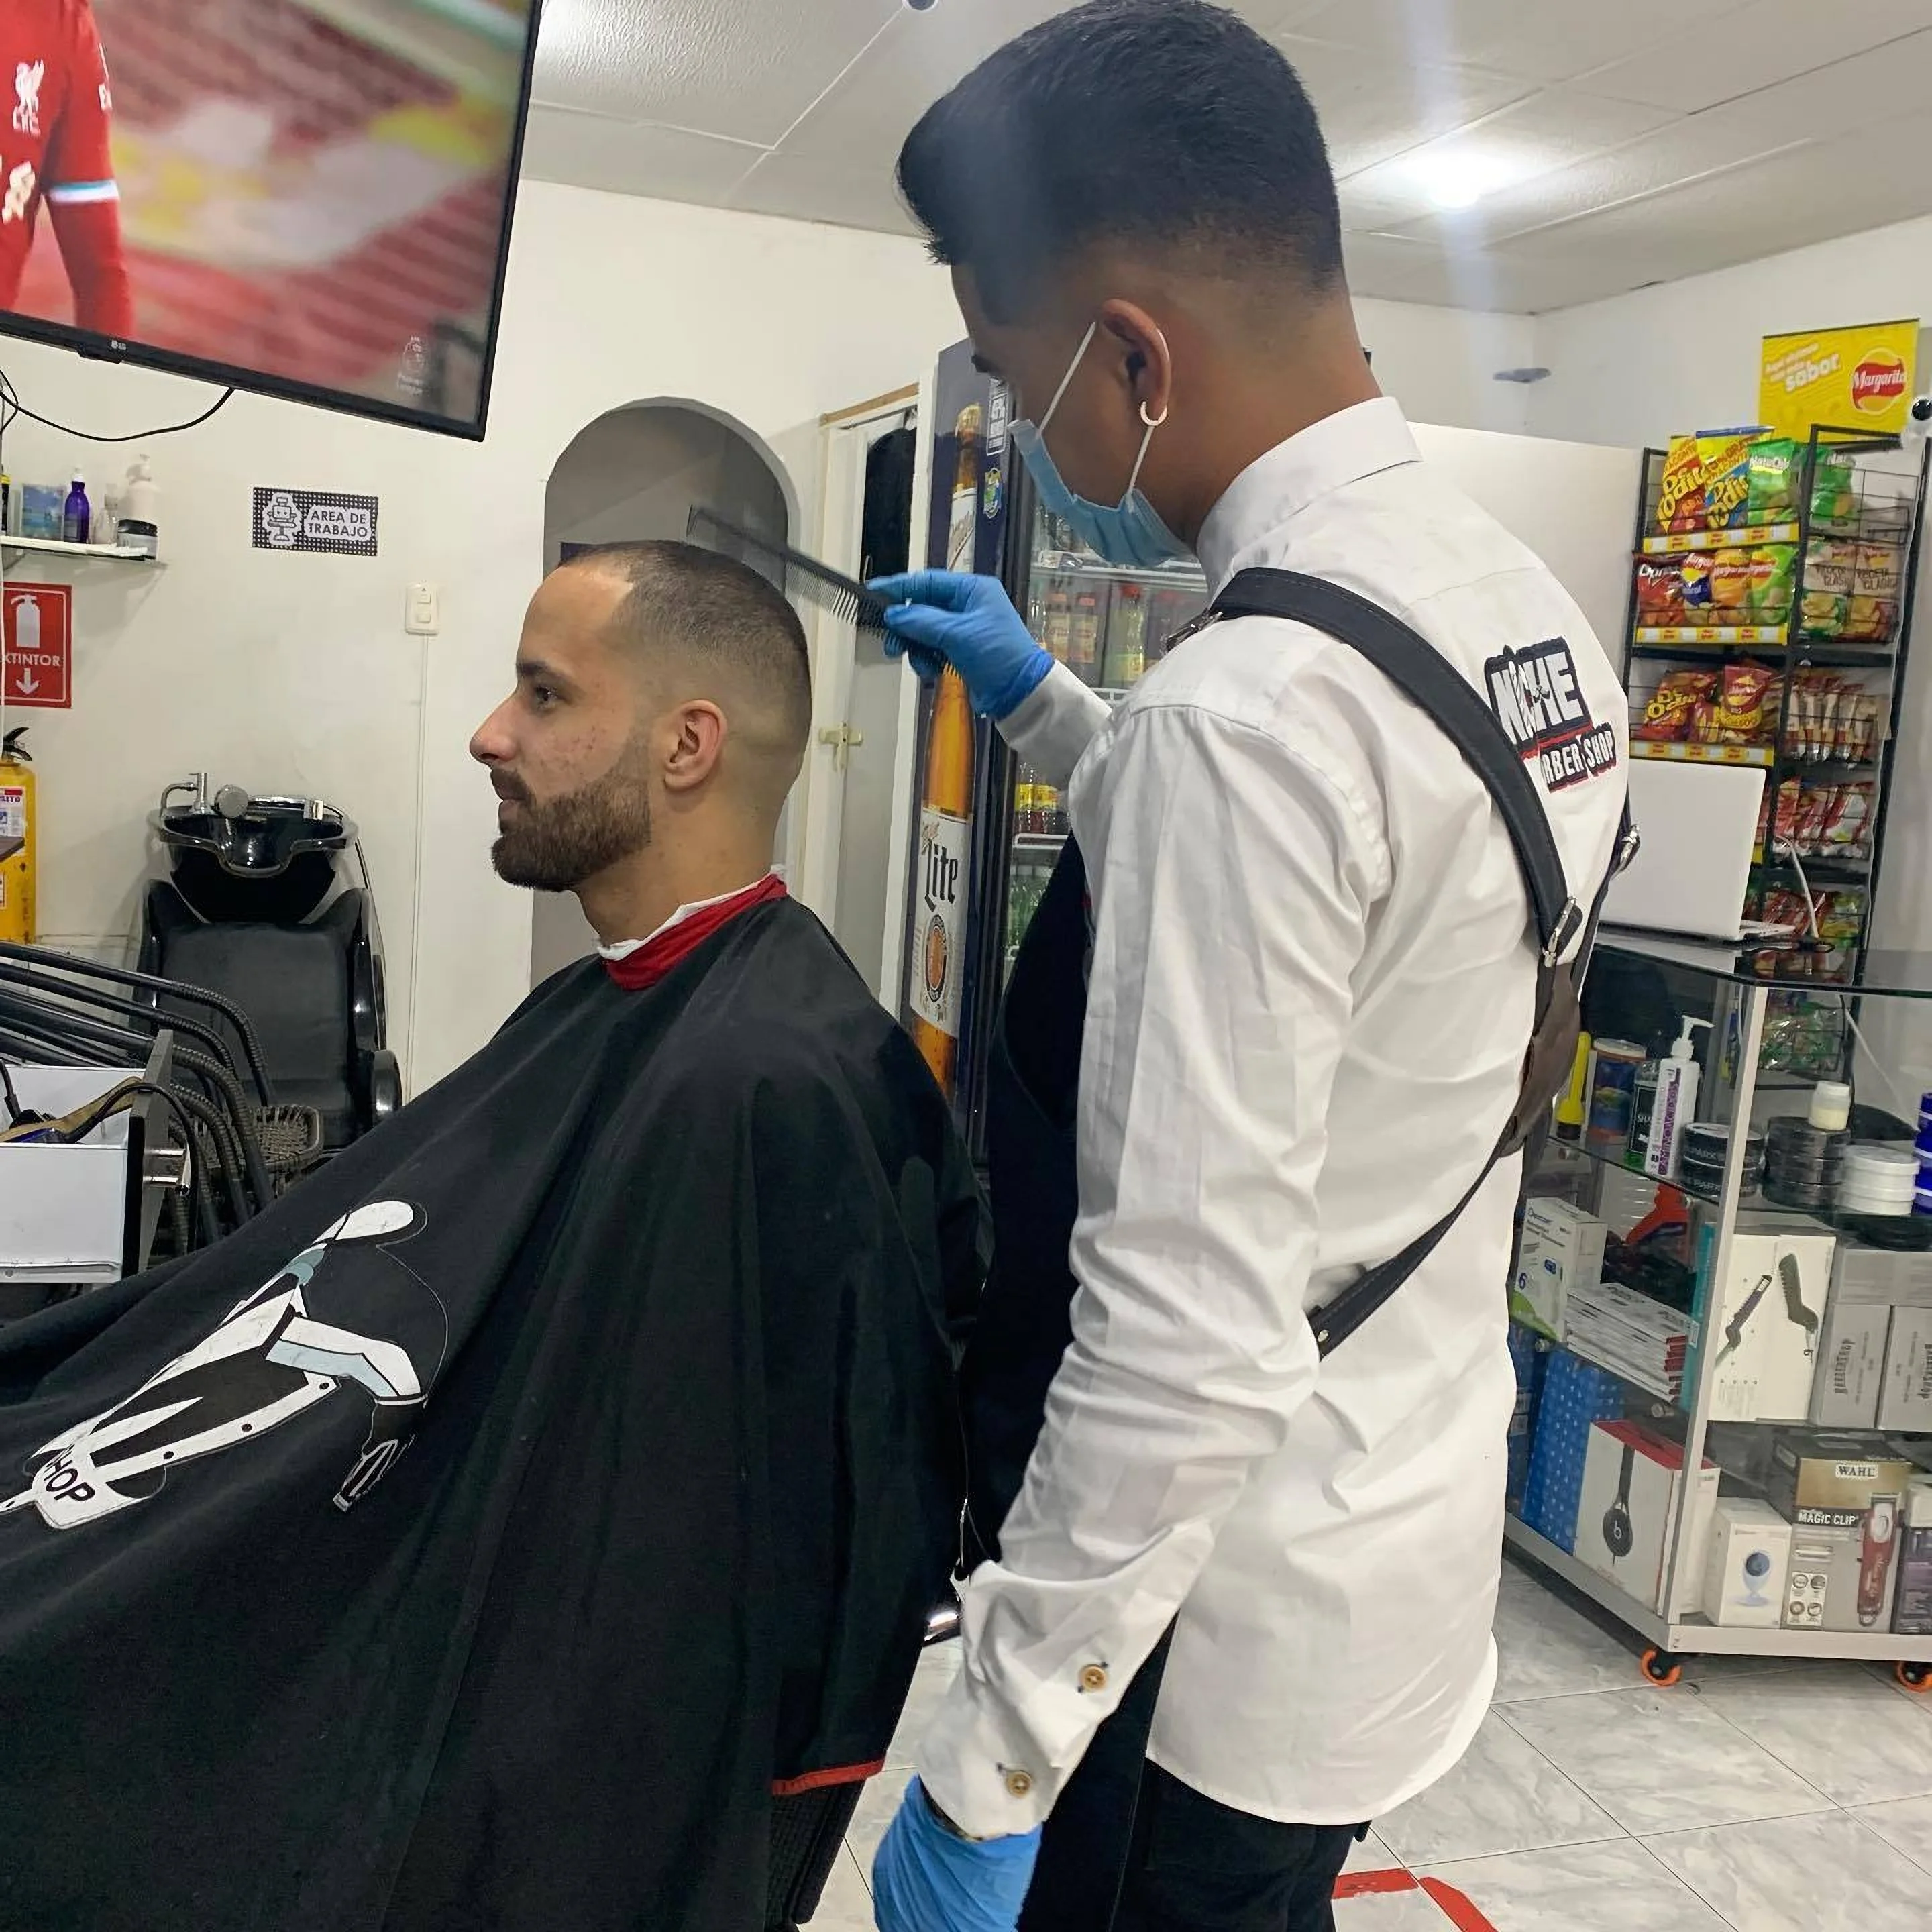 Barbería-niche-barber-shop-7558